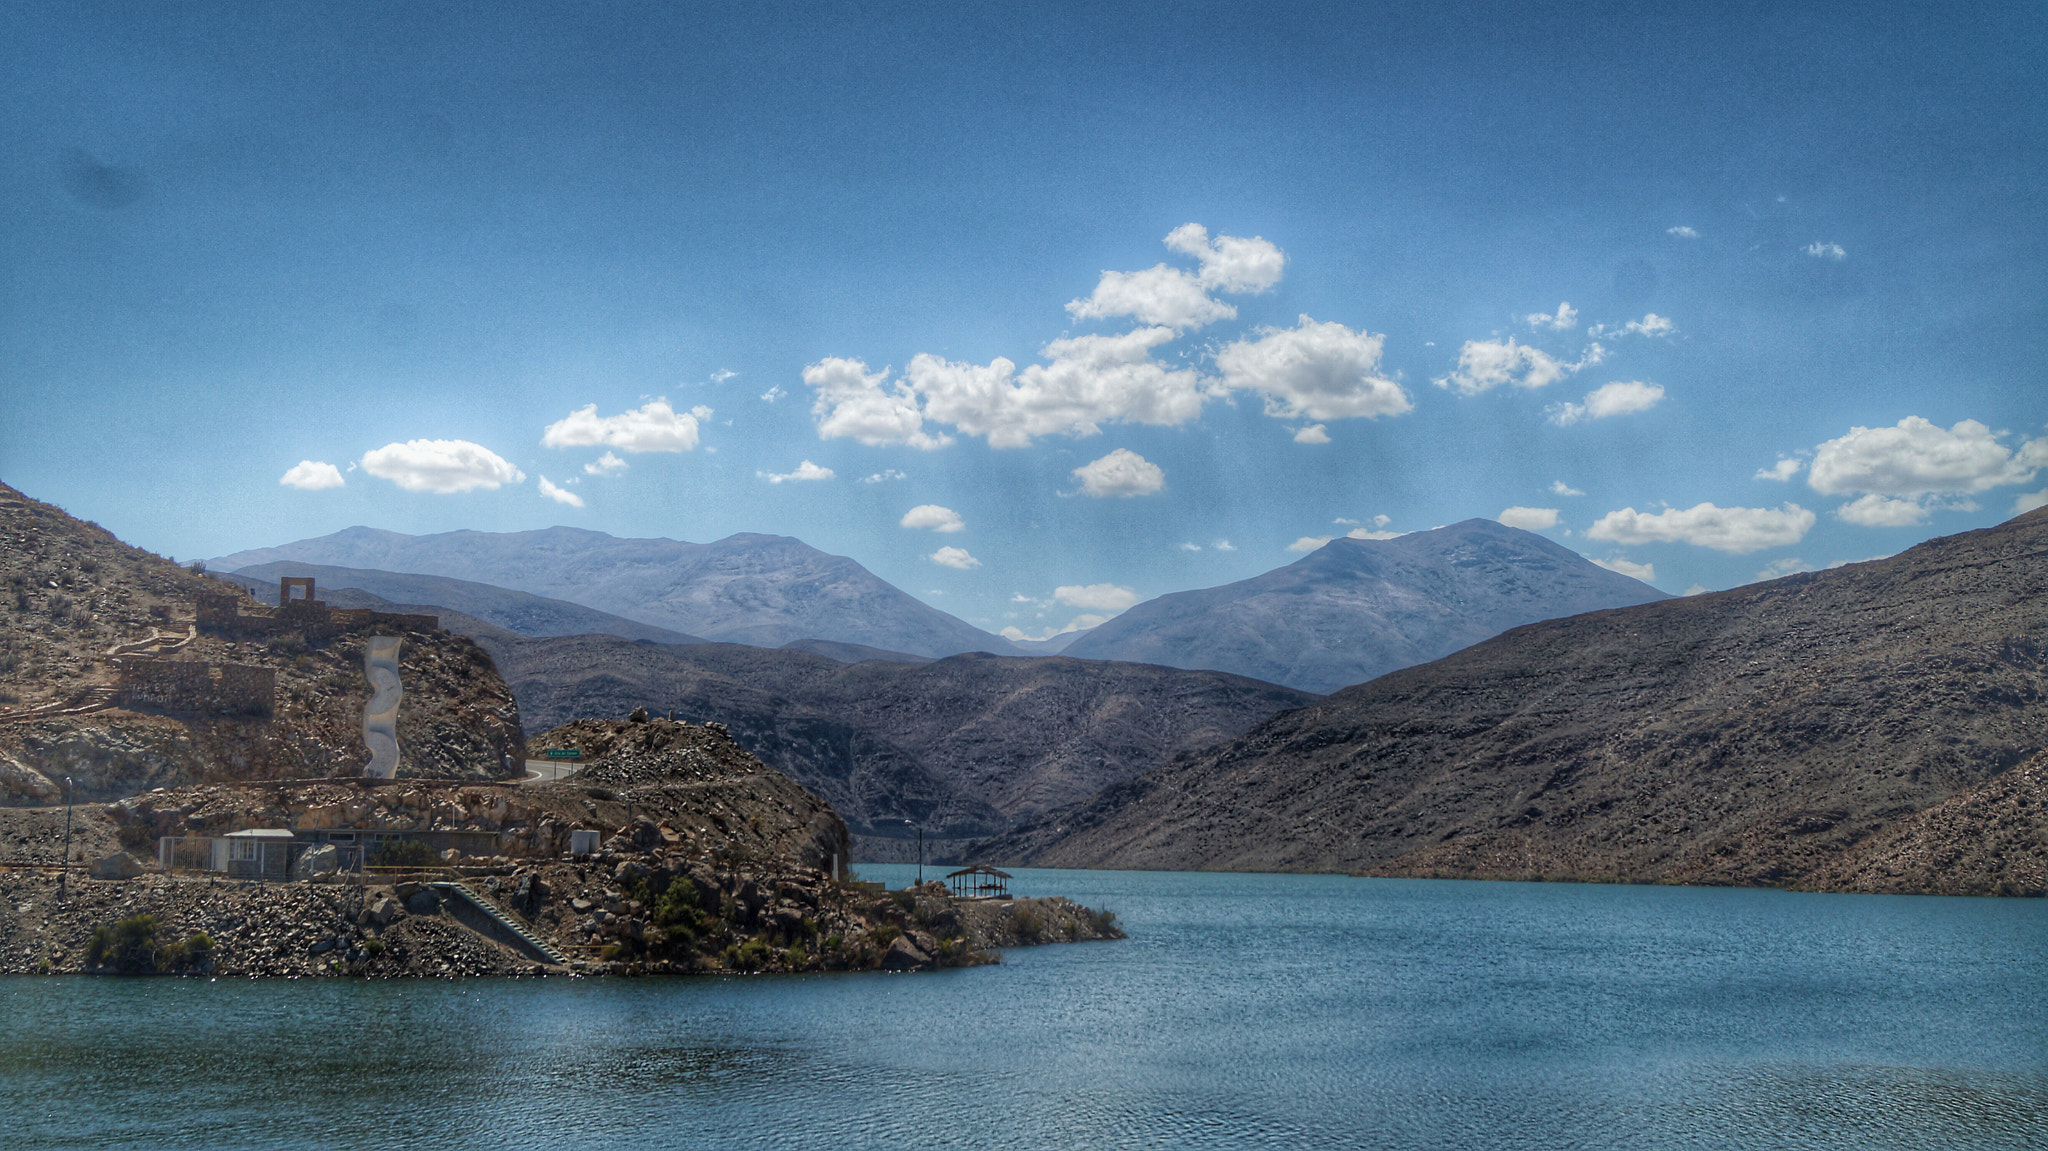 Sony SLT-A37 sample photo. Santa juana dam in the atacama valley chile photography